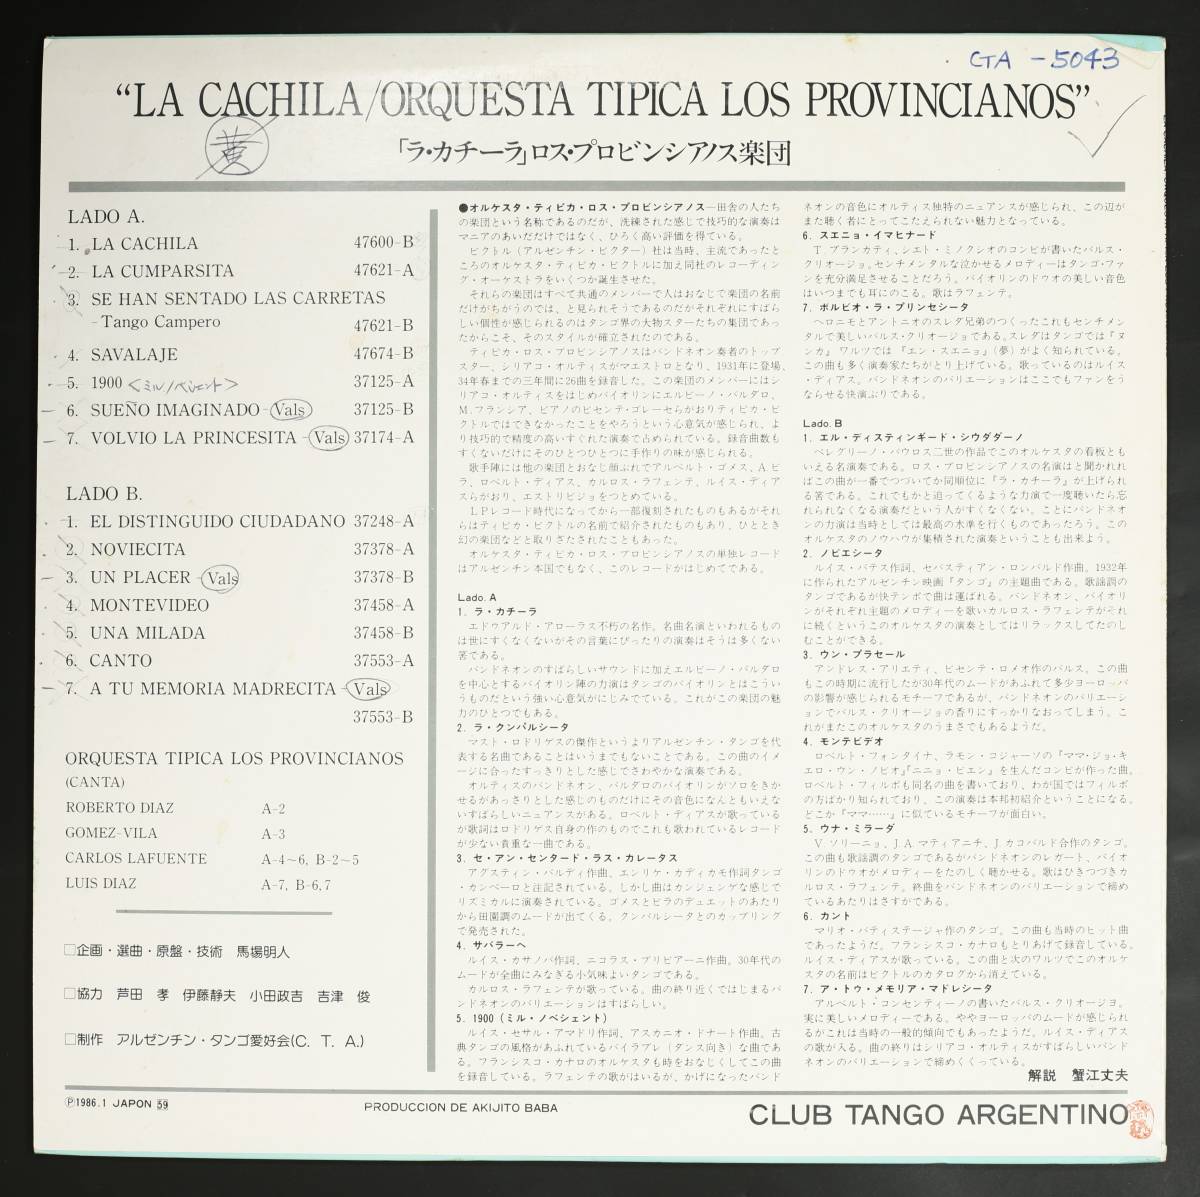 【自主盤LP】ロス・プロビンシアノス楽団/ラ・カチーラ(並品,SP原盤,戦前タンゴ,Argentine Tango,Orquesta Tipica Los Provincianos)_画像2